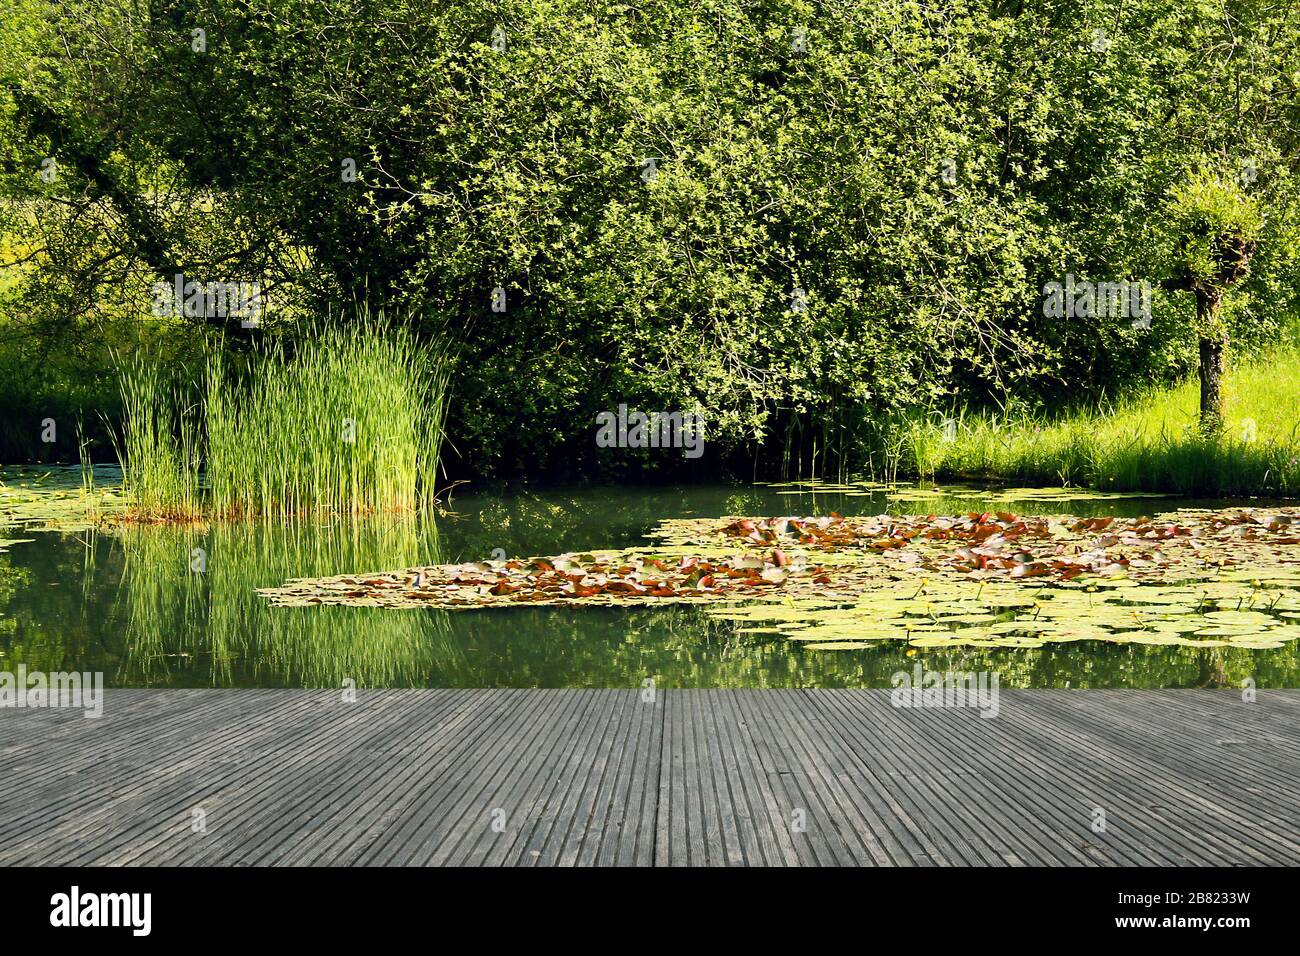 Terrazza con vista meravigliosa. Giardino stagno con gigli d'acqua e rive verdi. Vivere con gioia in natura. Germania Foto Stock